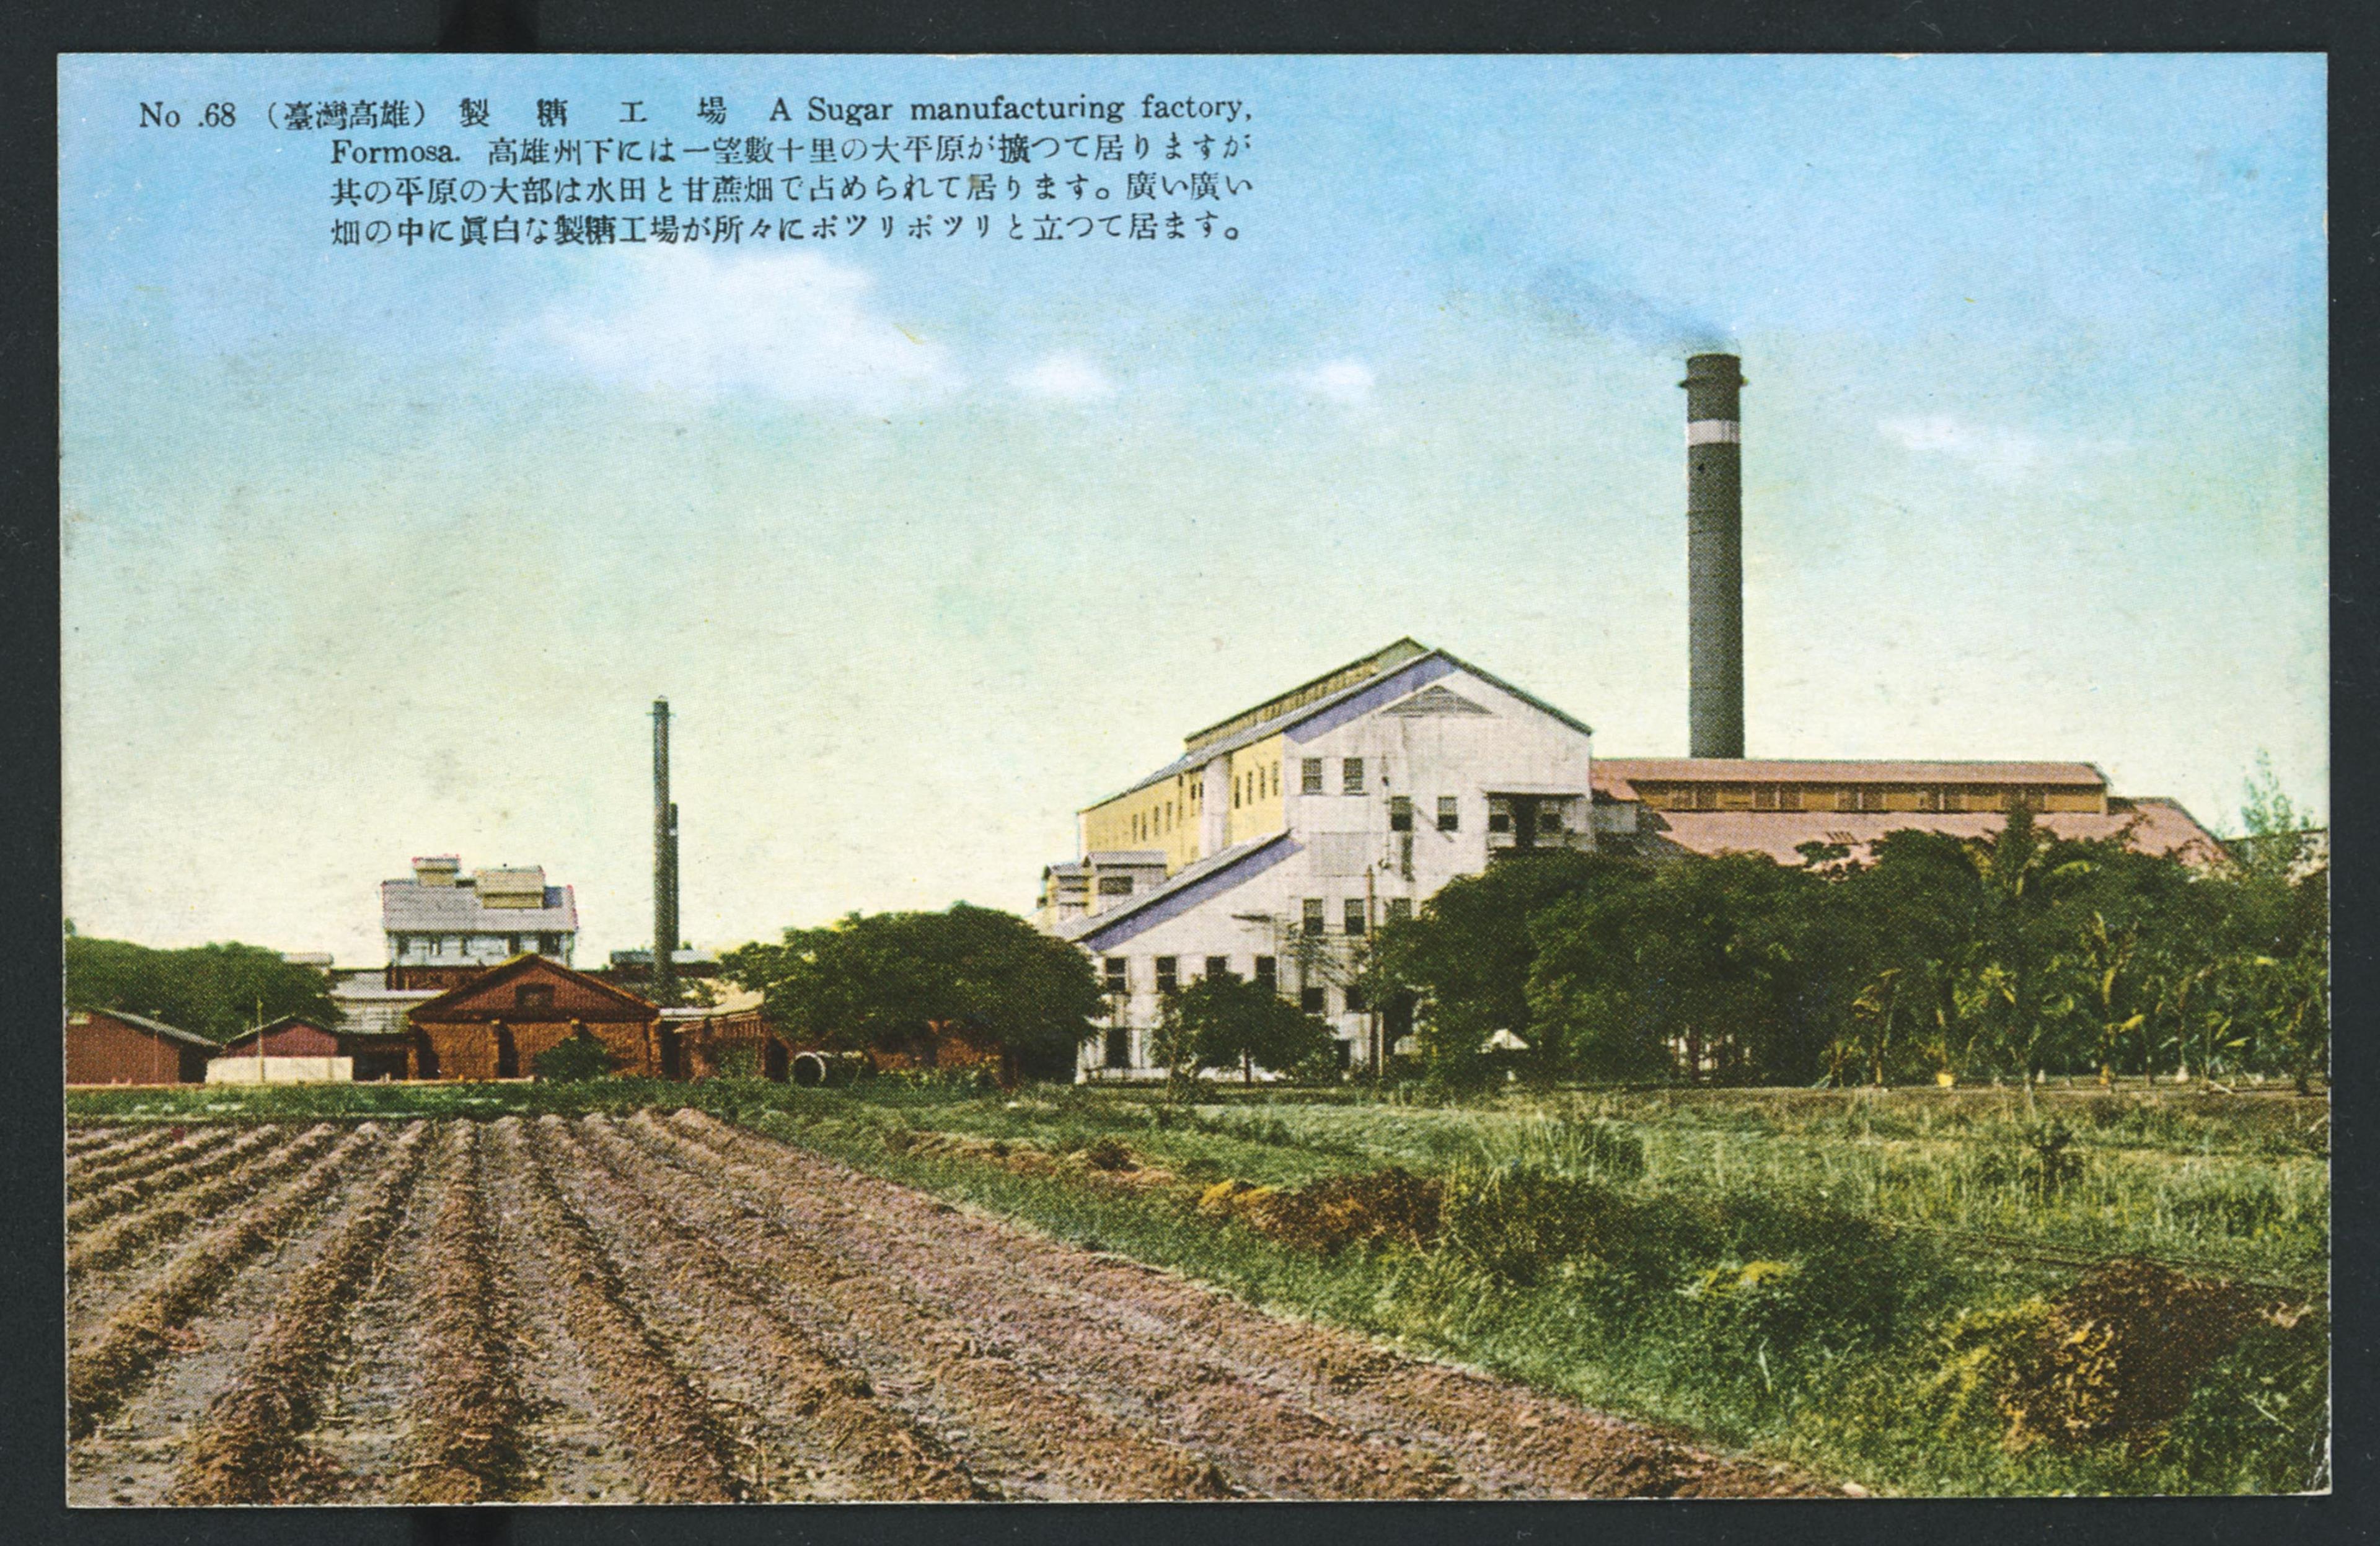 生蕃屋本店印行臺灣高雄製糖工場 (共1張)